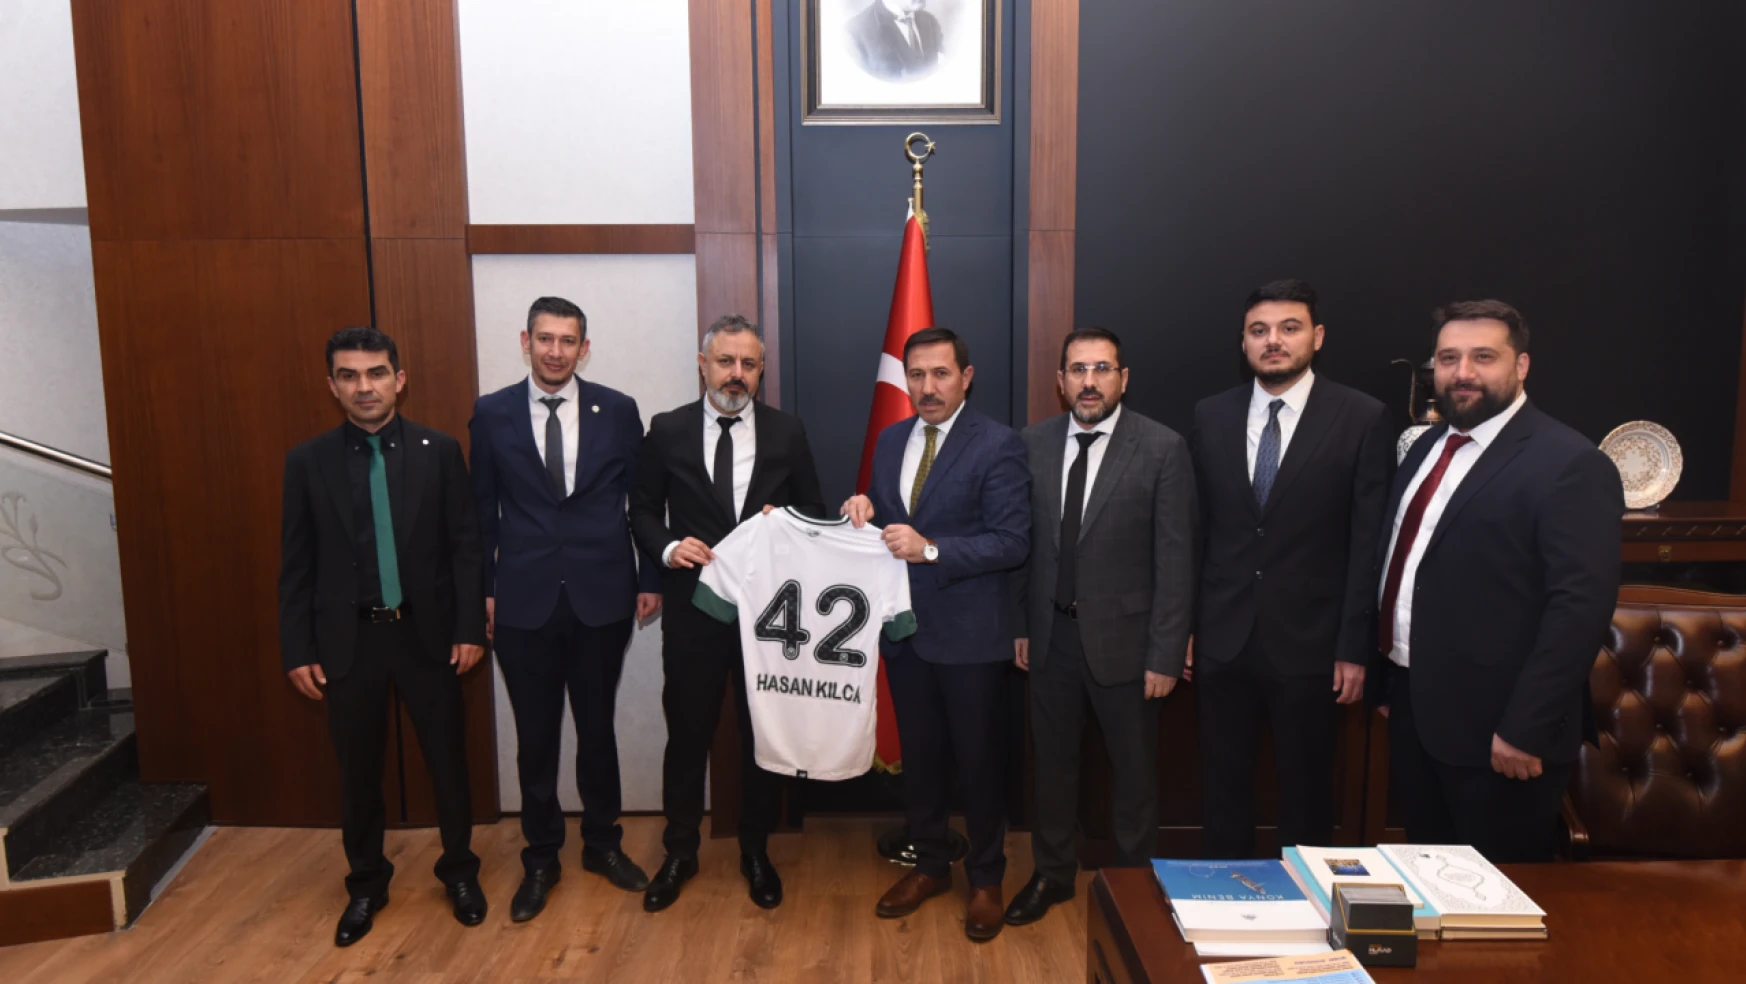 Konyaspor Yönetimi Merkez İlçe Belediyelerini ziyaret etti